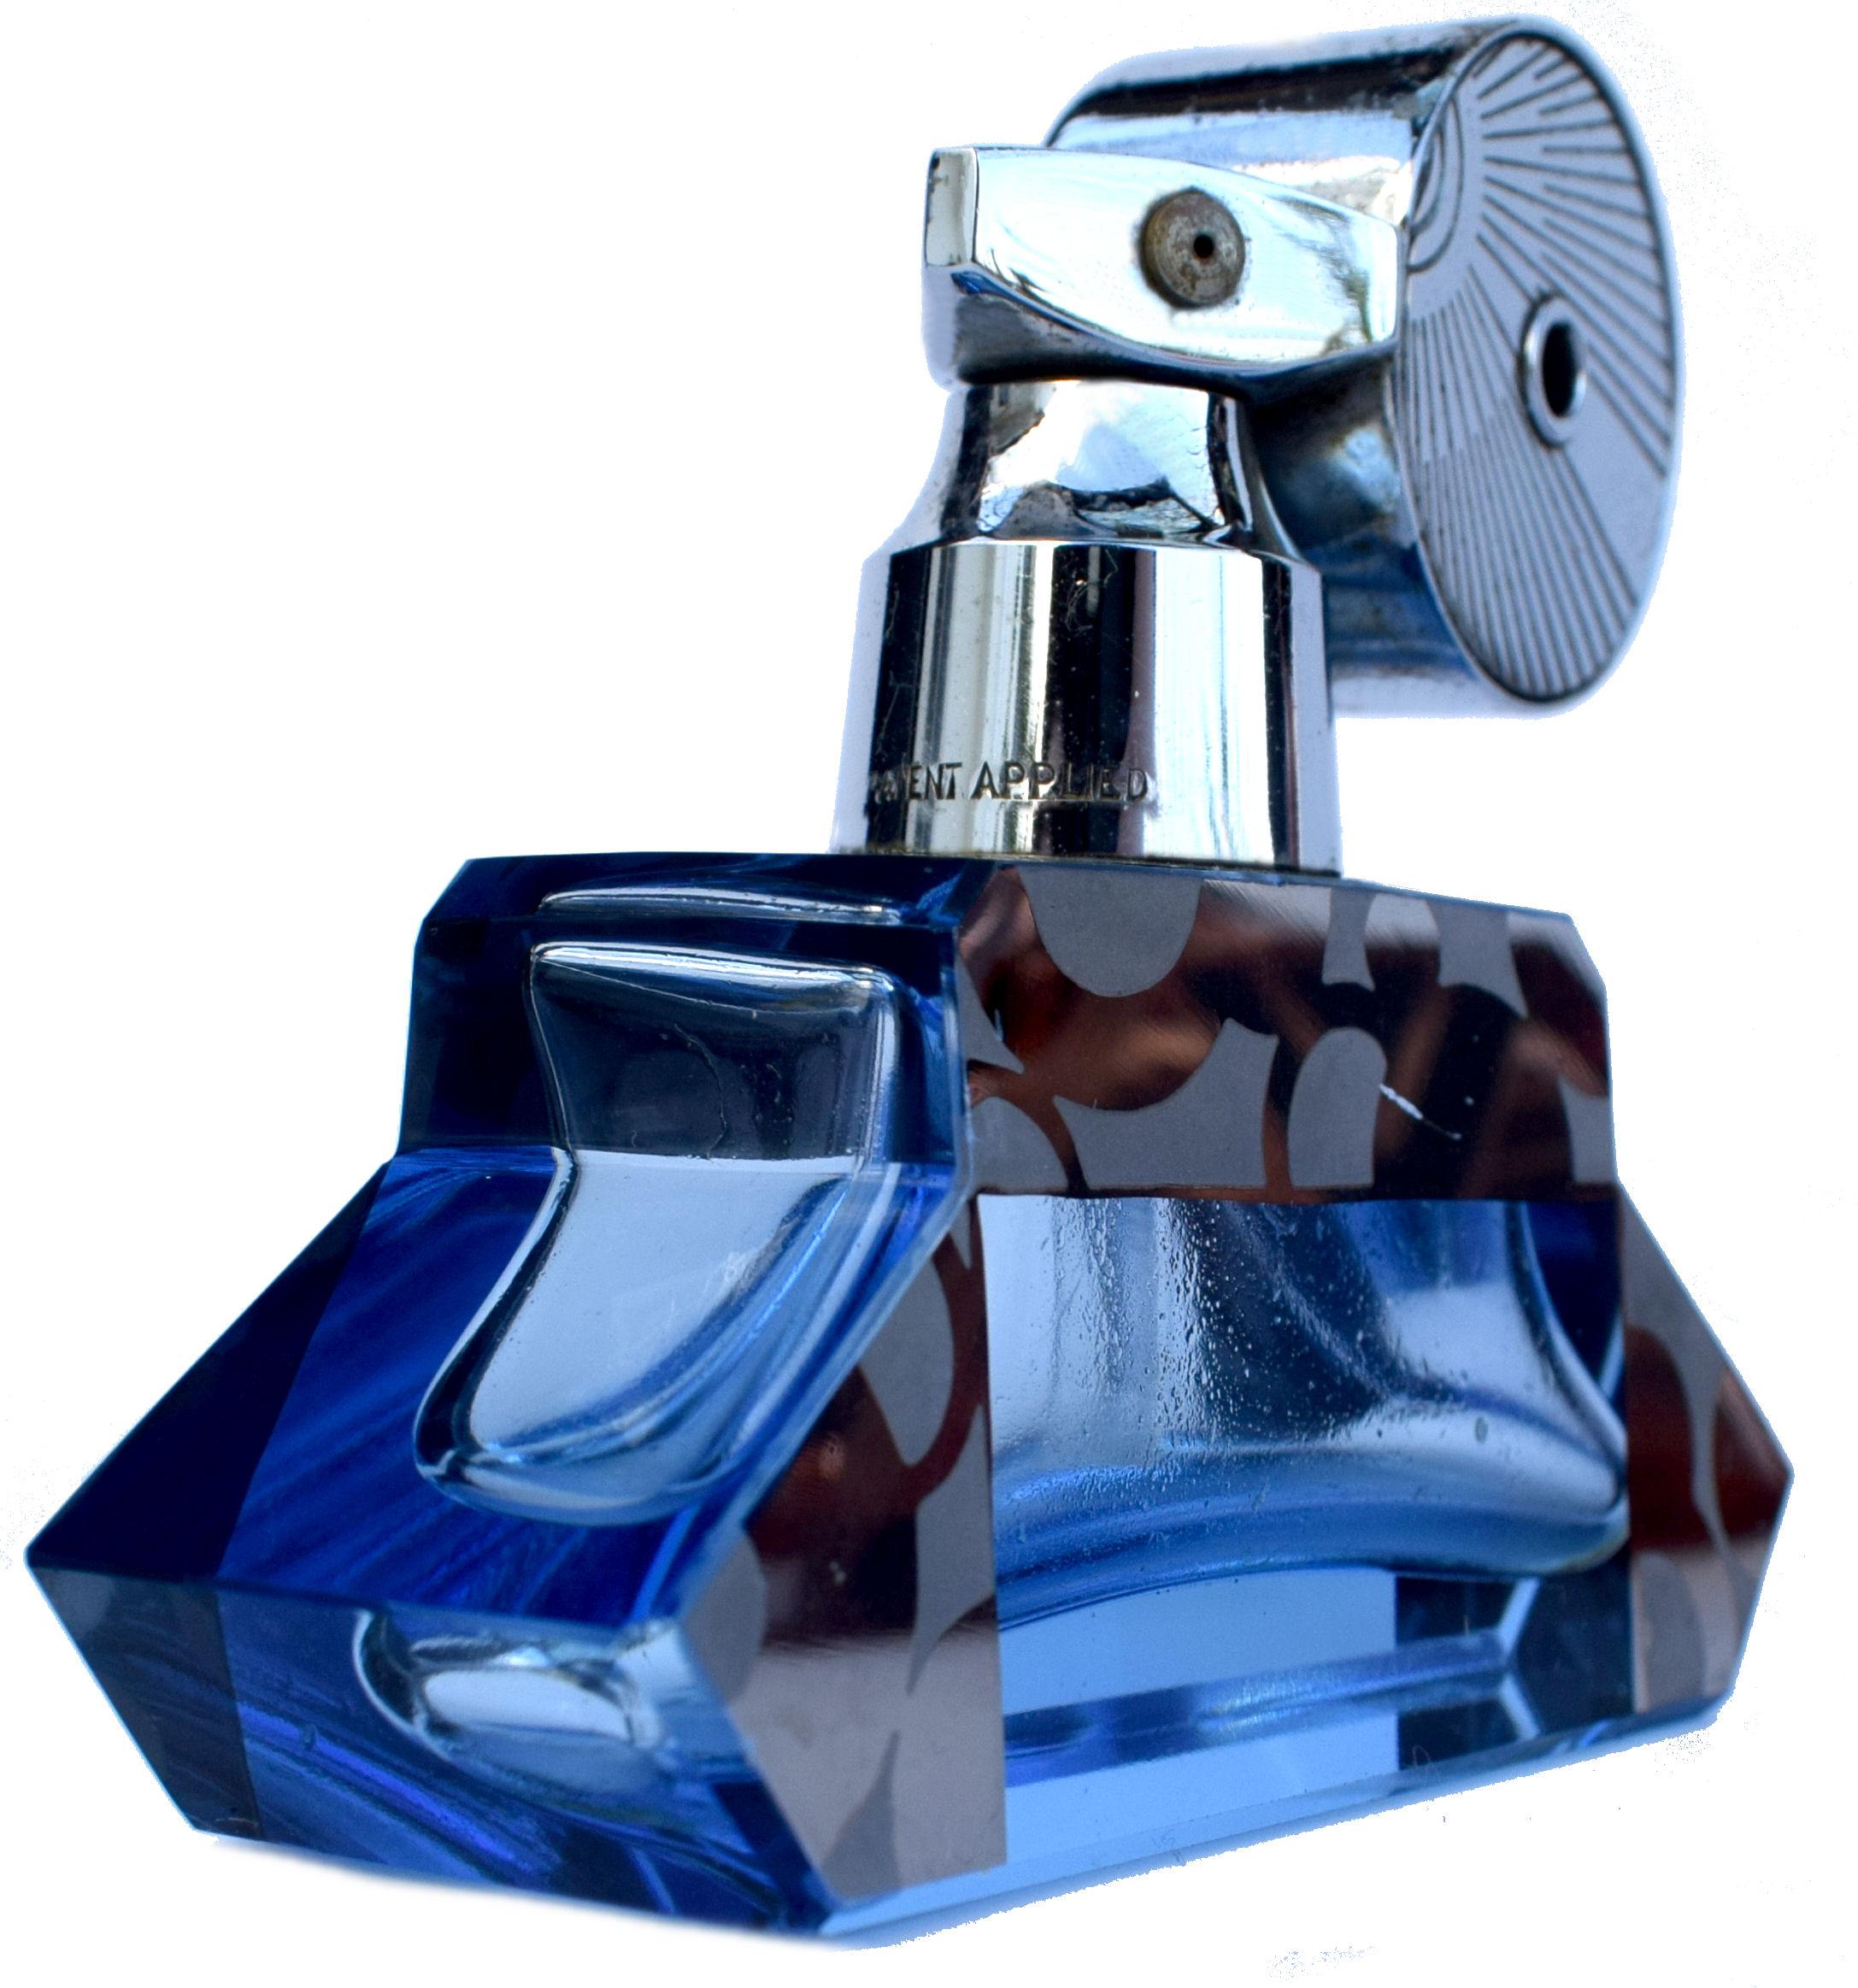 Eine stilvolle englische Art Deco Zerstäuber Parfüm / Duft Flasche 1930er Jahre Stromlinie. Verchromter Zerstäuber mit blauer Glasflasche mit silber/schwarzer Emailleverzierung an den Seiten. Der Hals des verchromten Zerstäubers ist mit 